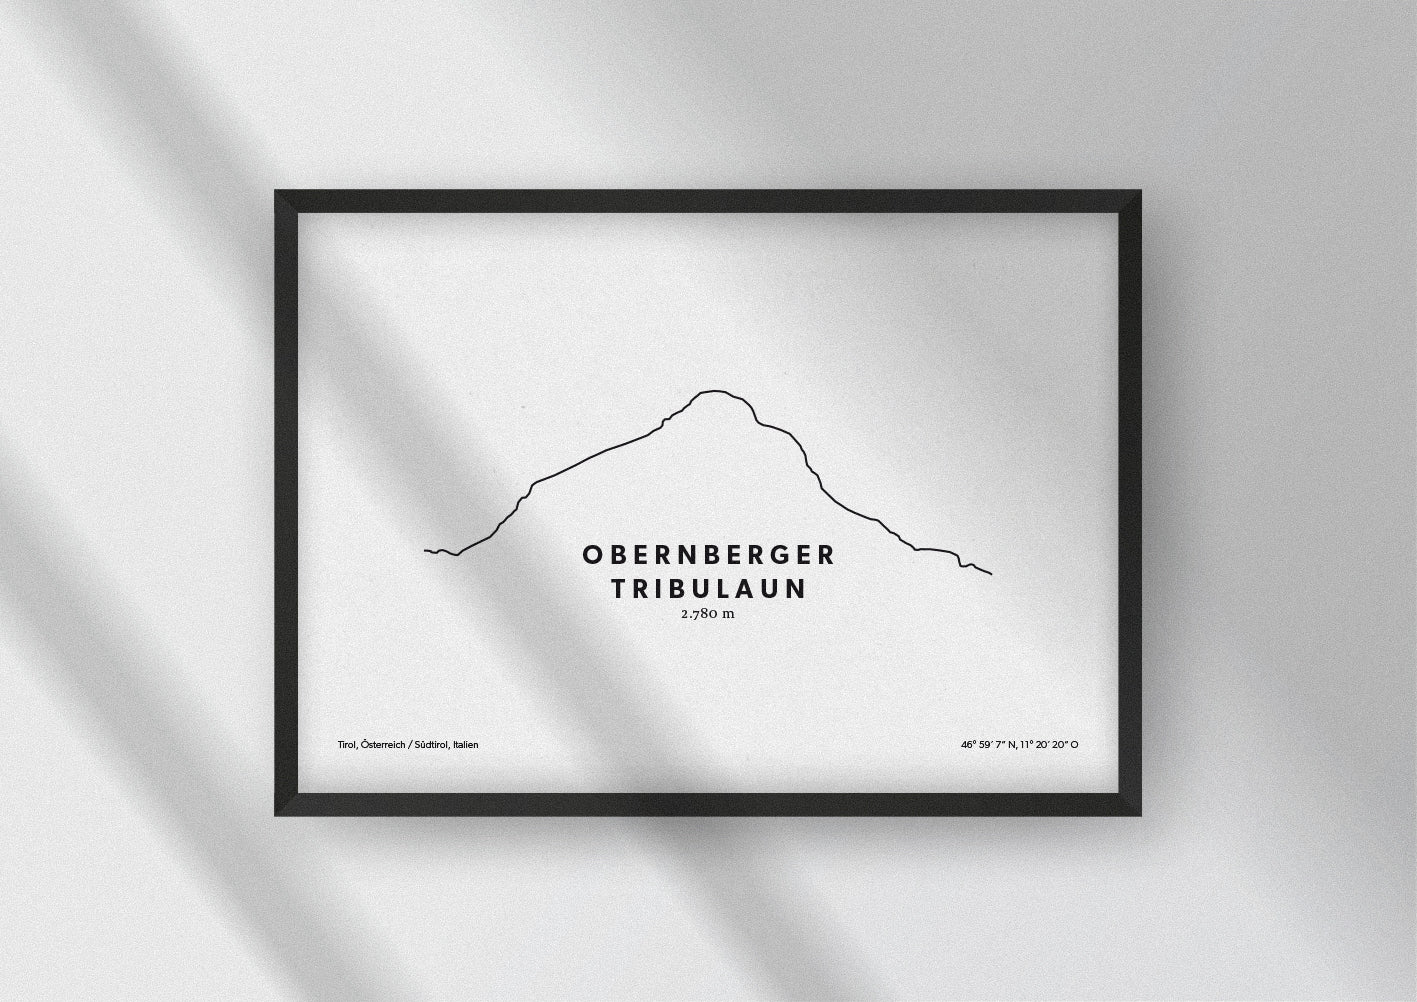 Minimalistische Illustration des Obernberger Tribulaunr, einem Berg in den Stubaier Alpen in Tirol, als stilvoller Einrichtungsgegenstand für Zuhause.